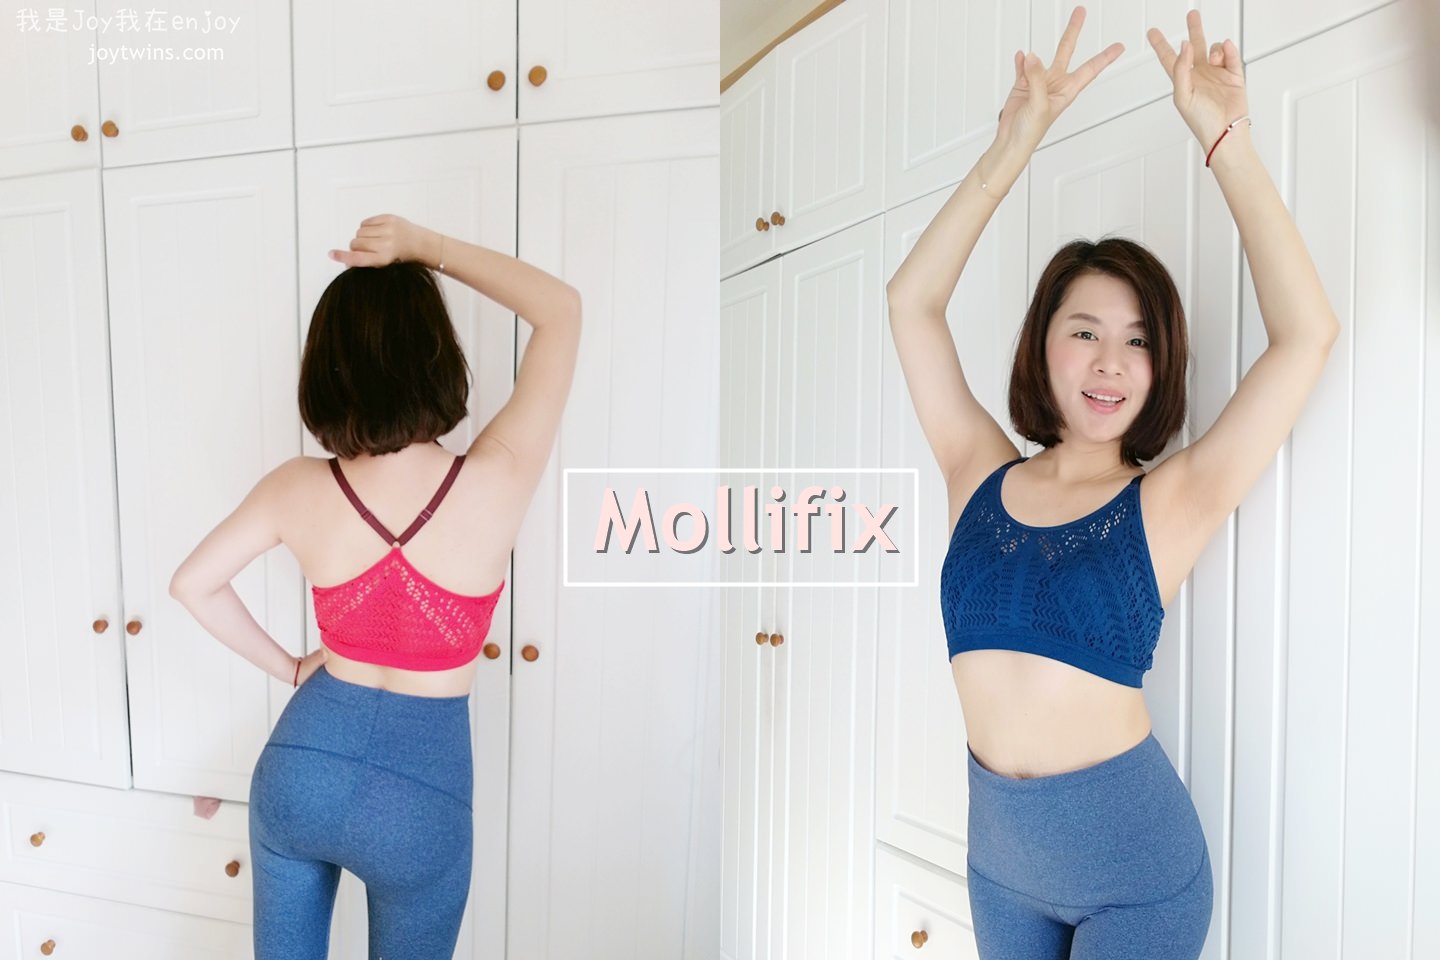 【開團】Mollifix 瑪莉菲絲 高調A++輕盈呼吸BRA 無鋼圈+背心+內衣+塑身衣一體成型一次滿足